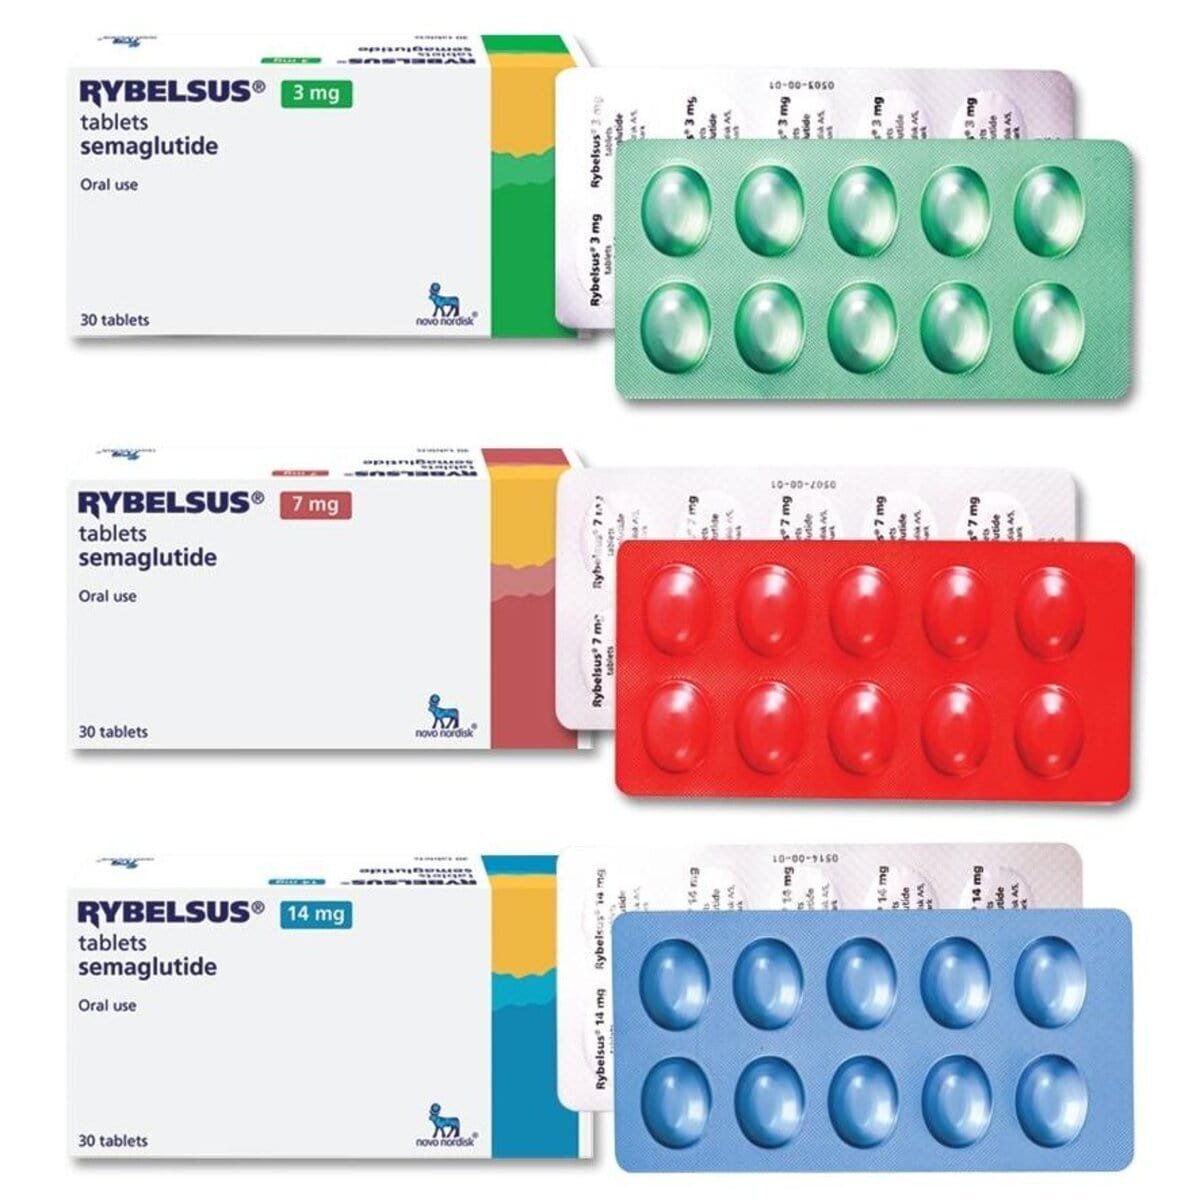 Kaufen Sie Rybelsus-Tabletten online | Effektive Abnehmpillen